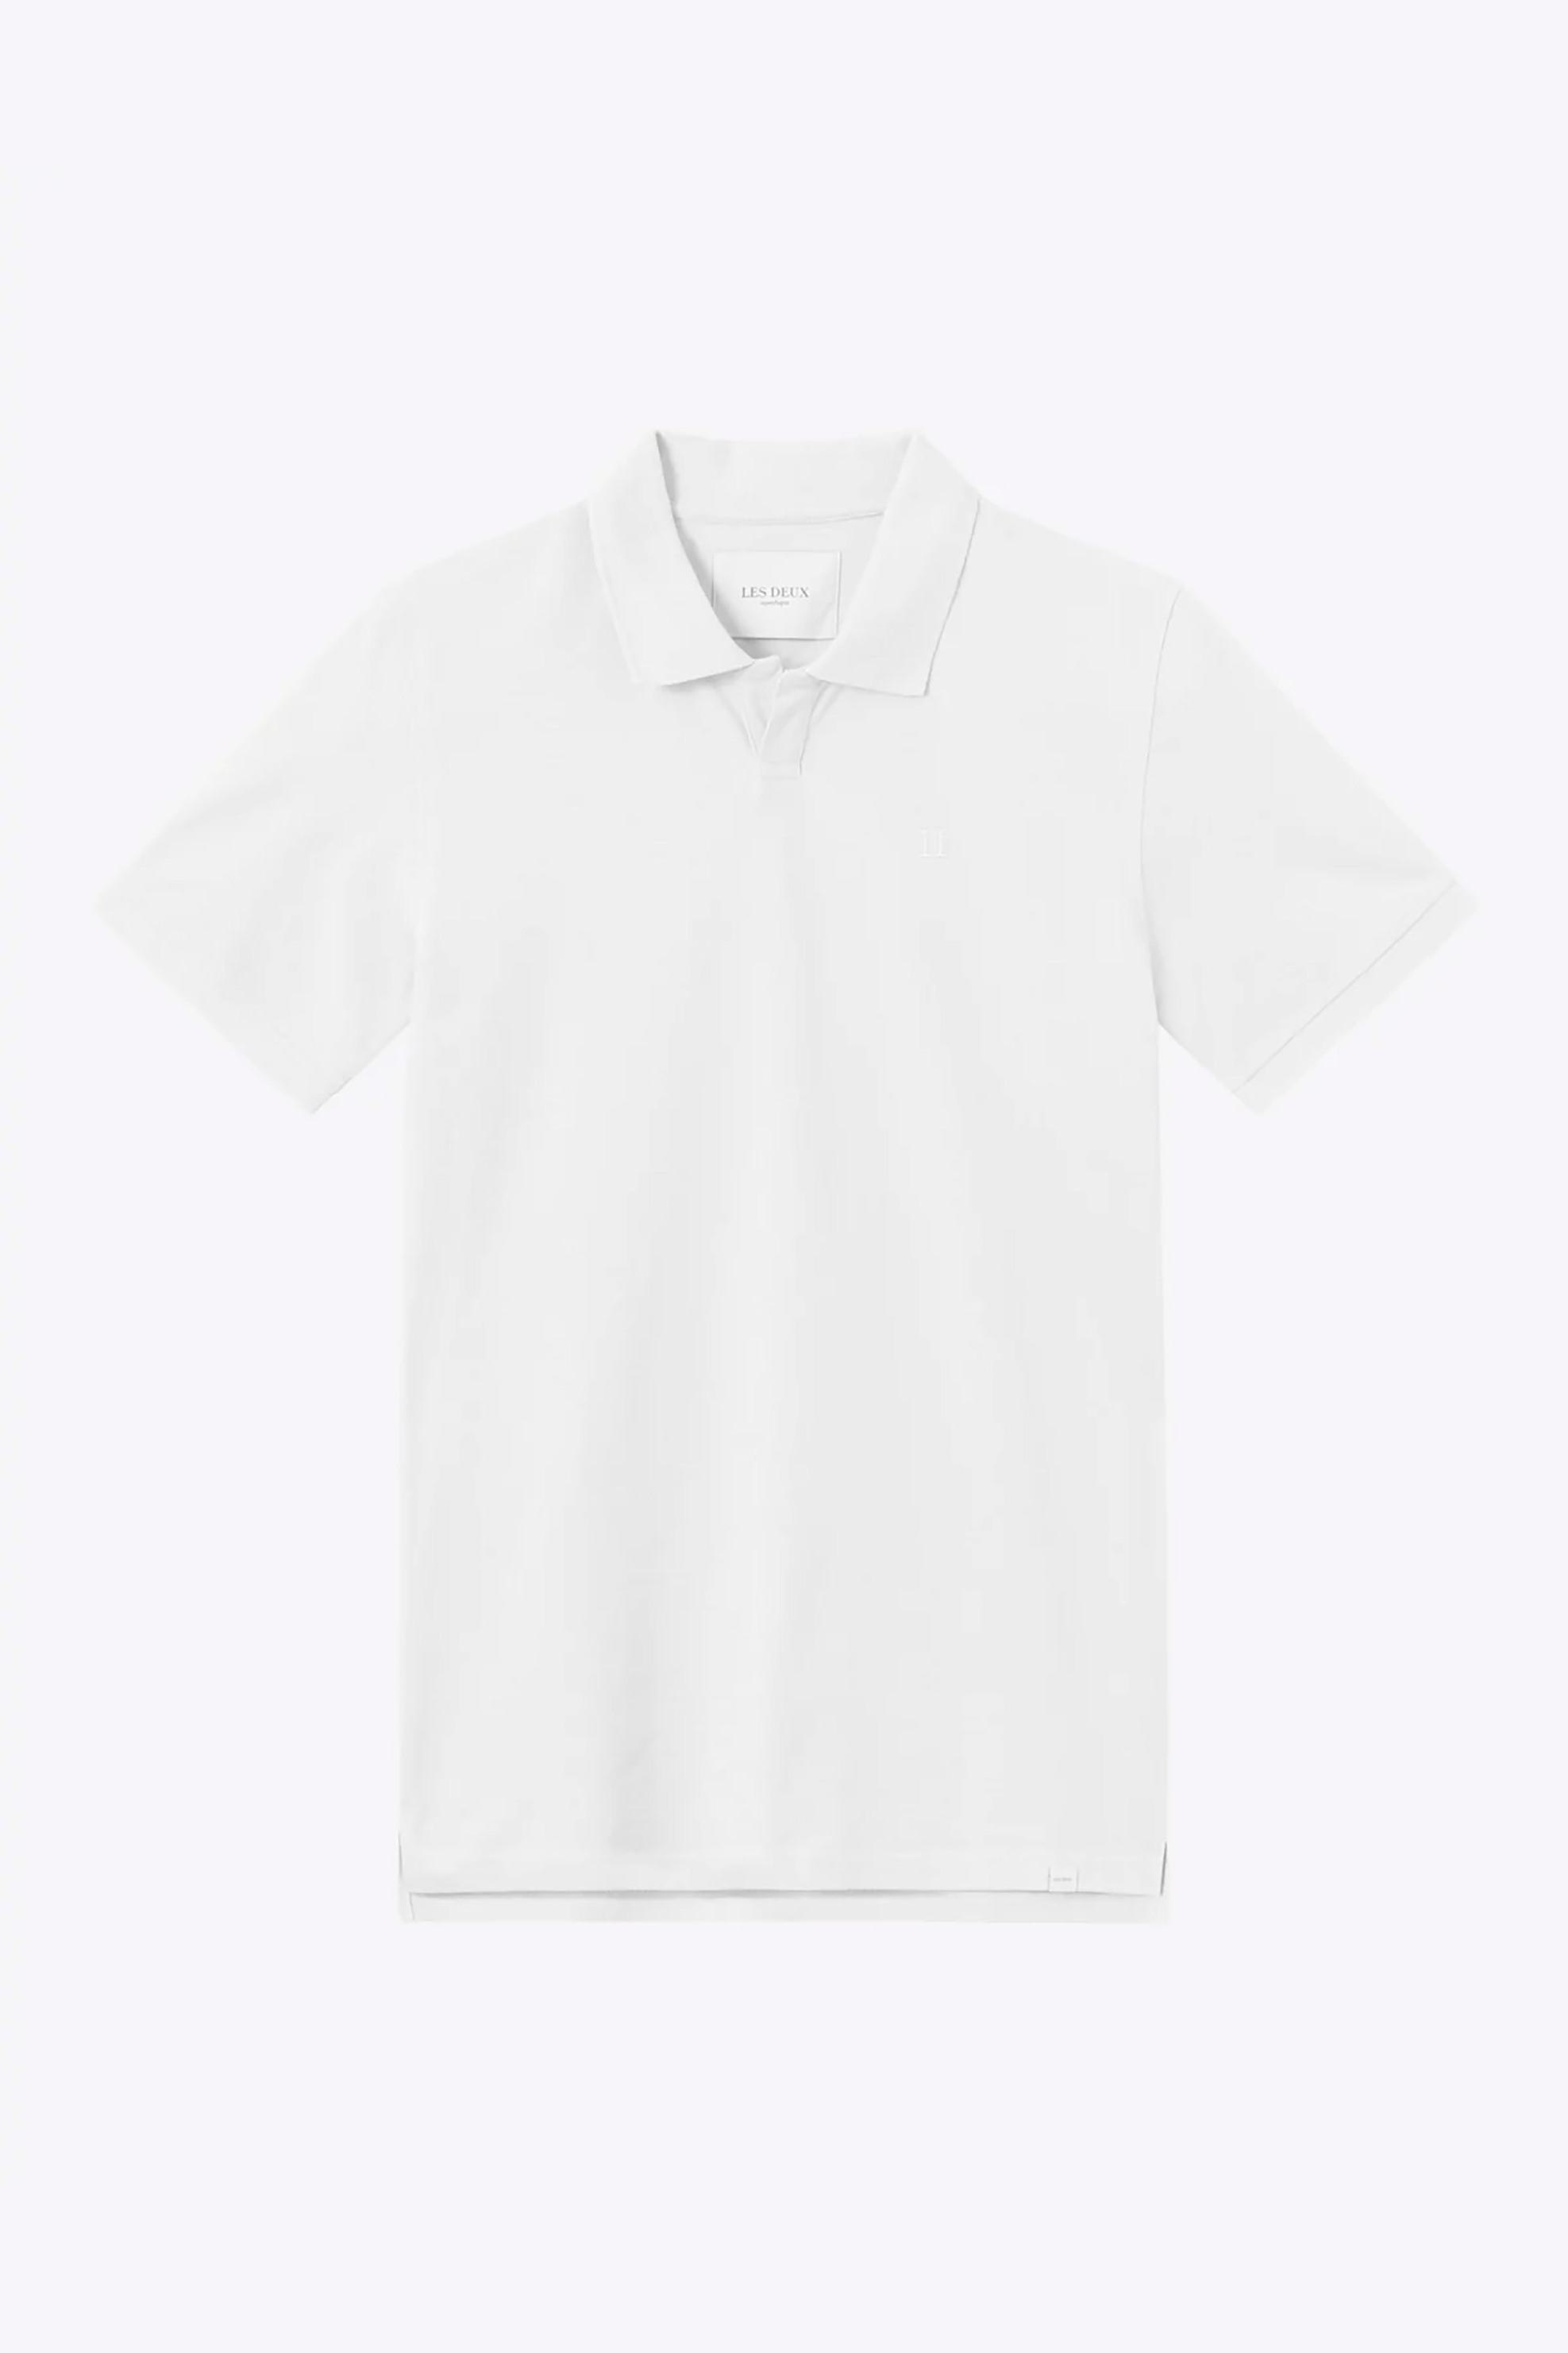 Ανδρική Μόδα > Ανδρικά Ρούχα > Ανδρικές Μπλούζες > Ανδρικές Μπλούζες Πολο Les Deux ανδρική μπλούζα πόλο μονόχρωμη με Piqué ύφανση με γιακά Slim Fit - LDM120006 Λευκό